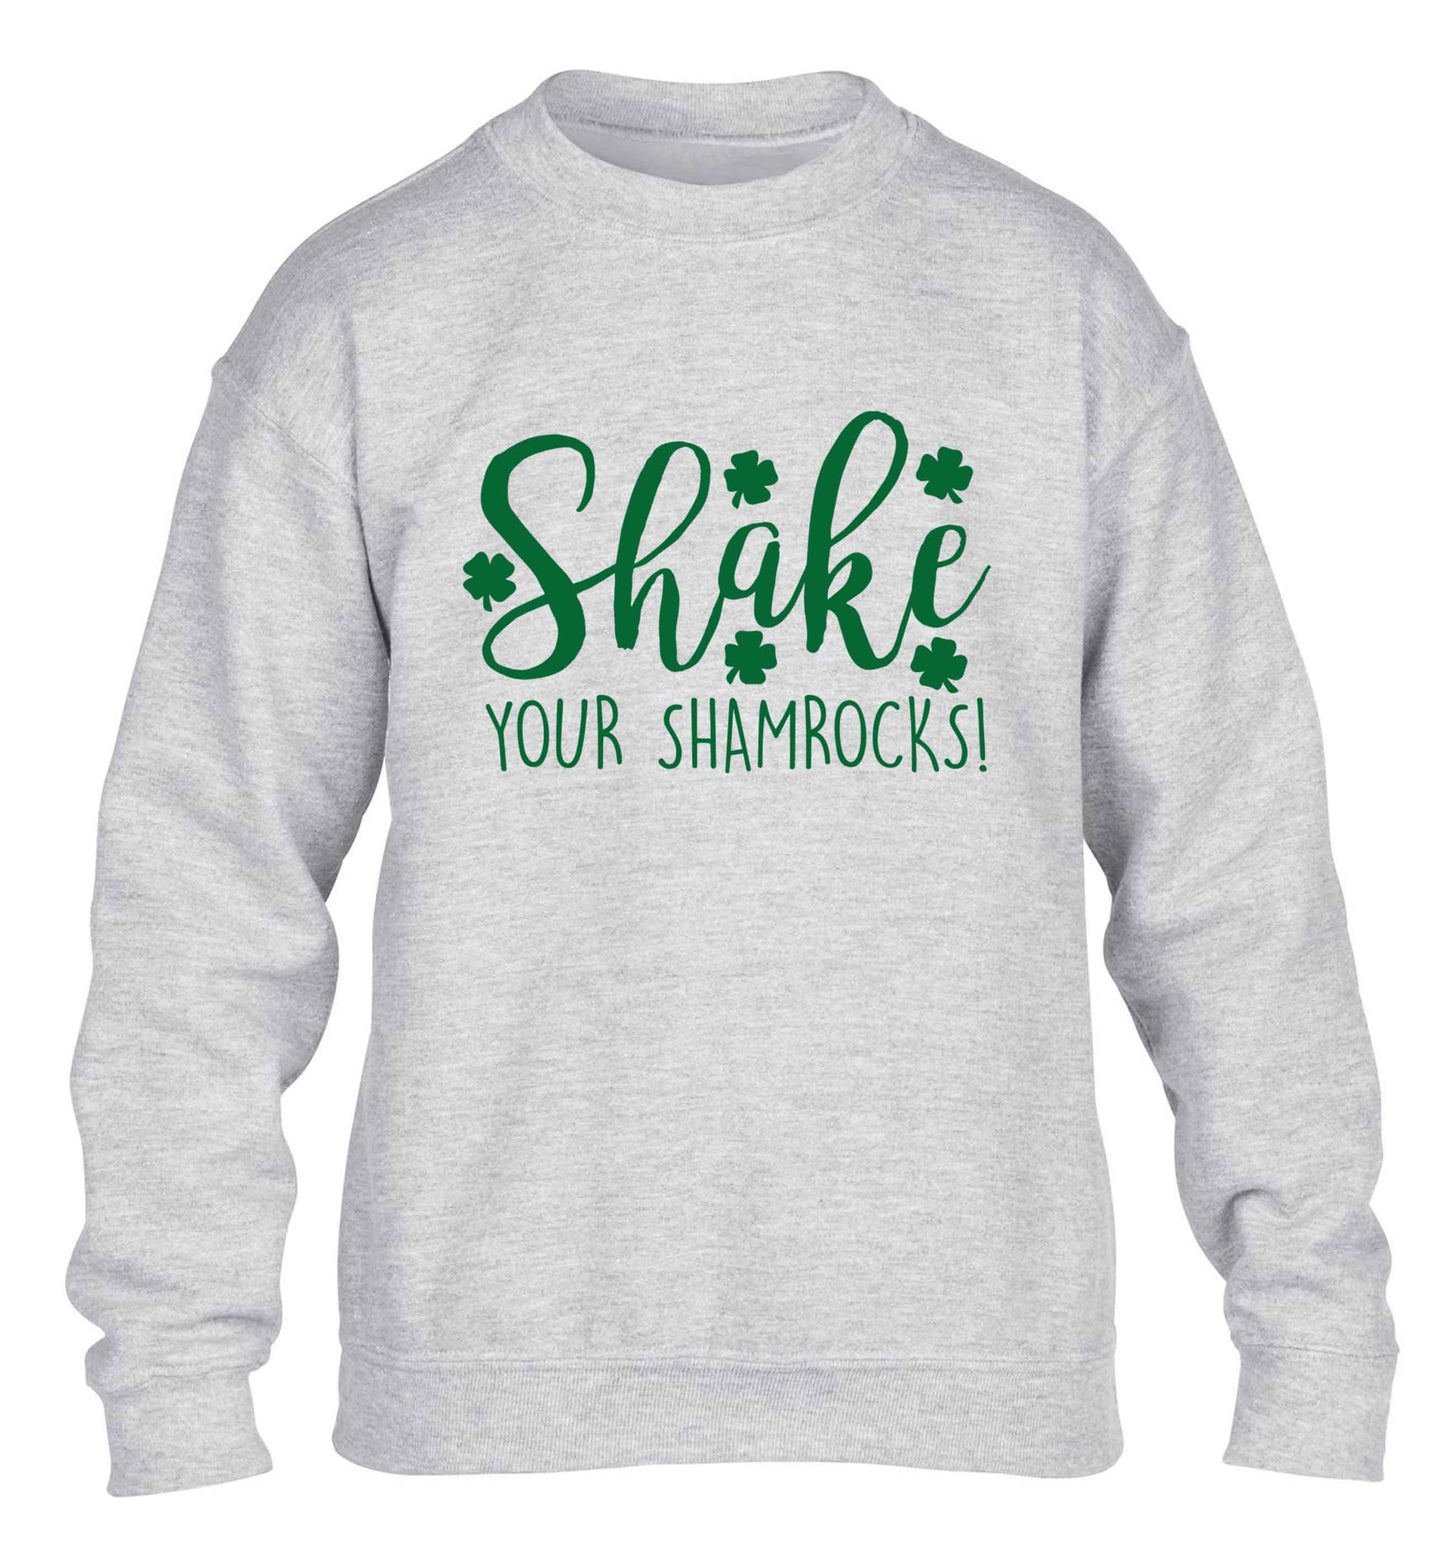 Shake your shamrocks children's grey sweater 12-13 Years